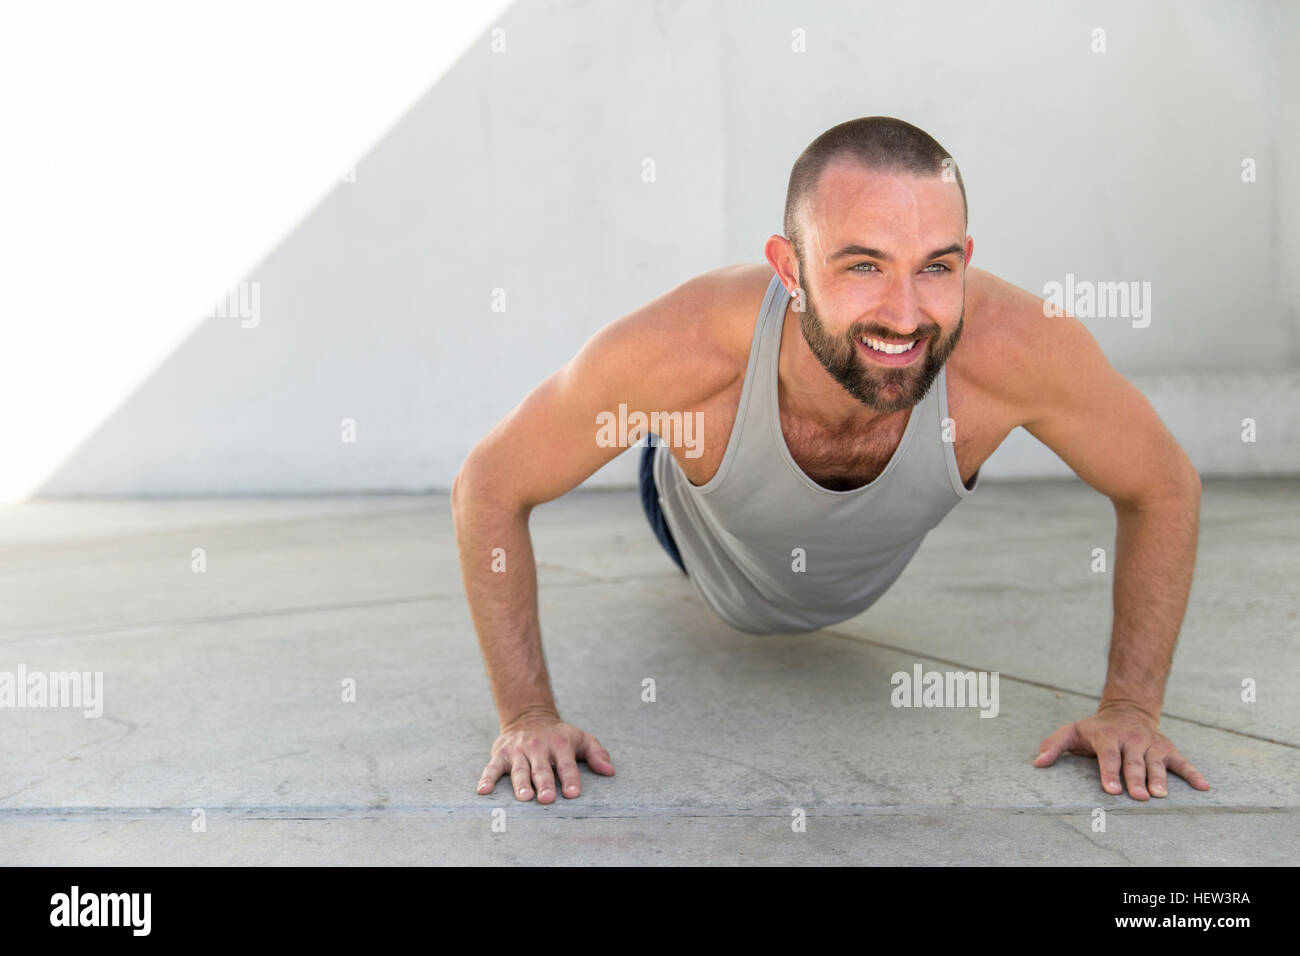 Mitte erwachsenen Mannes Ausbildung tun Push-Ups auf Terrasse Stockfoto